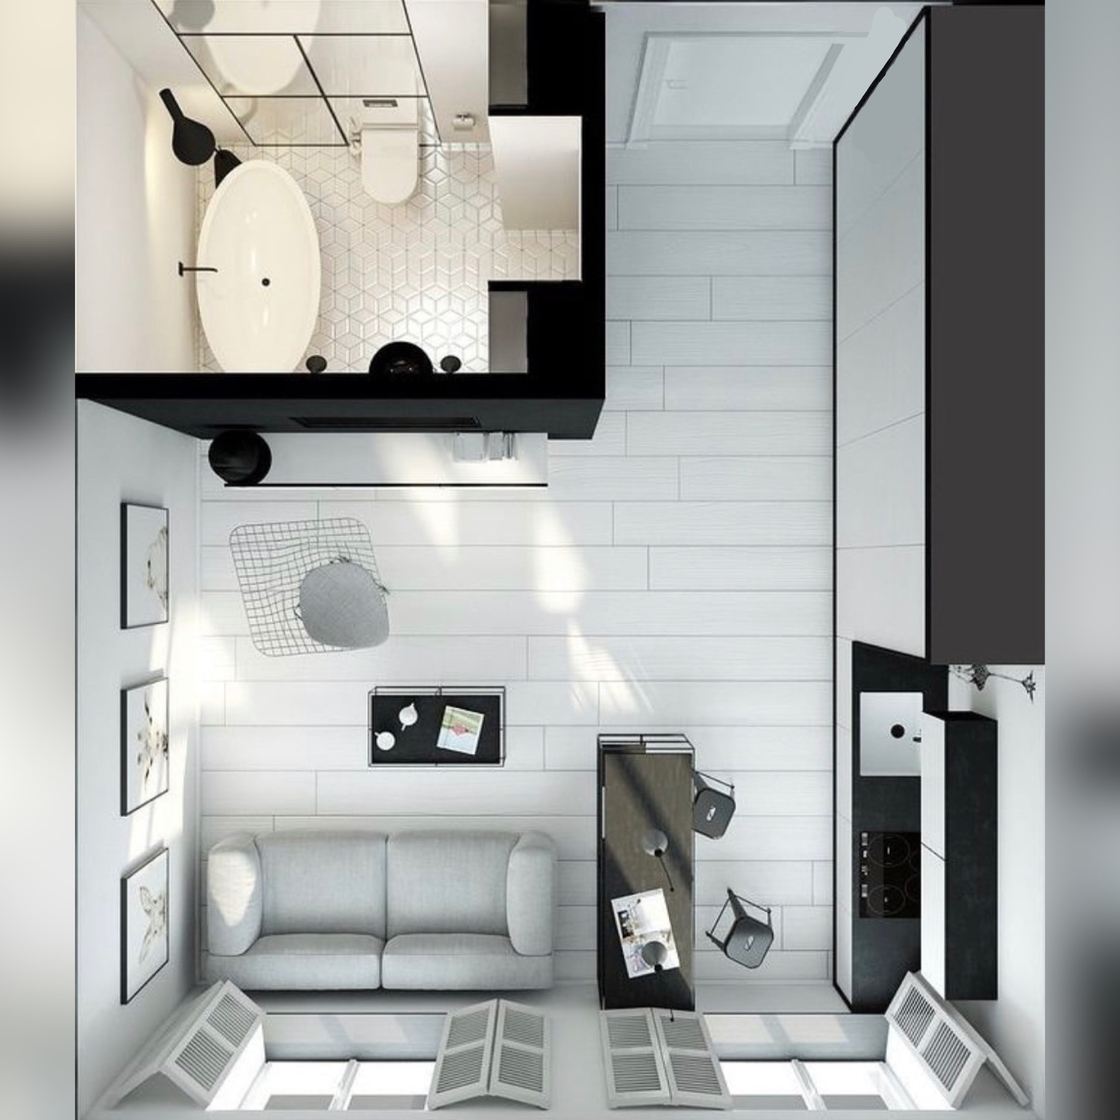 В рамках 20 квадратных метров: как создать продуманный и стильный дизайн в маленькой студии?